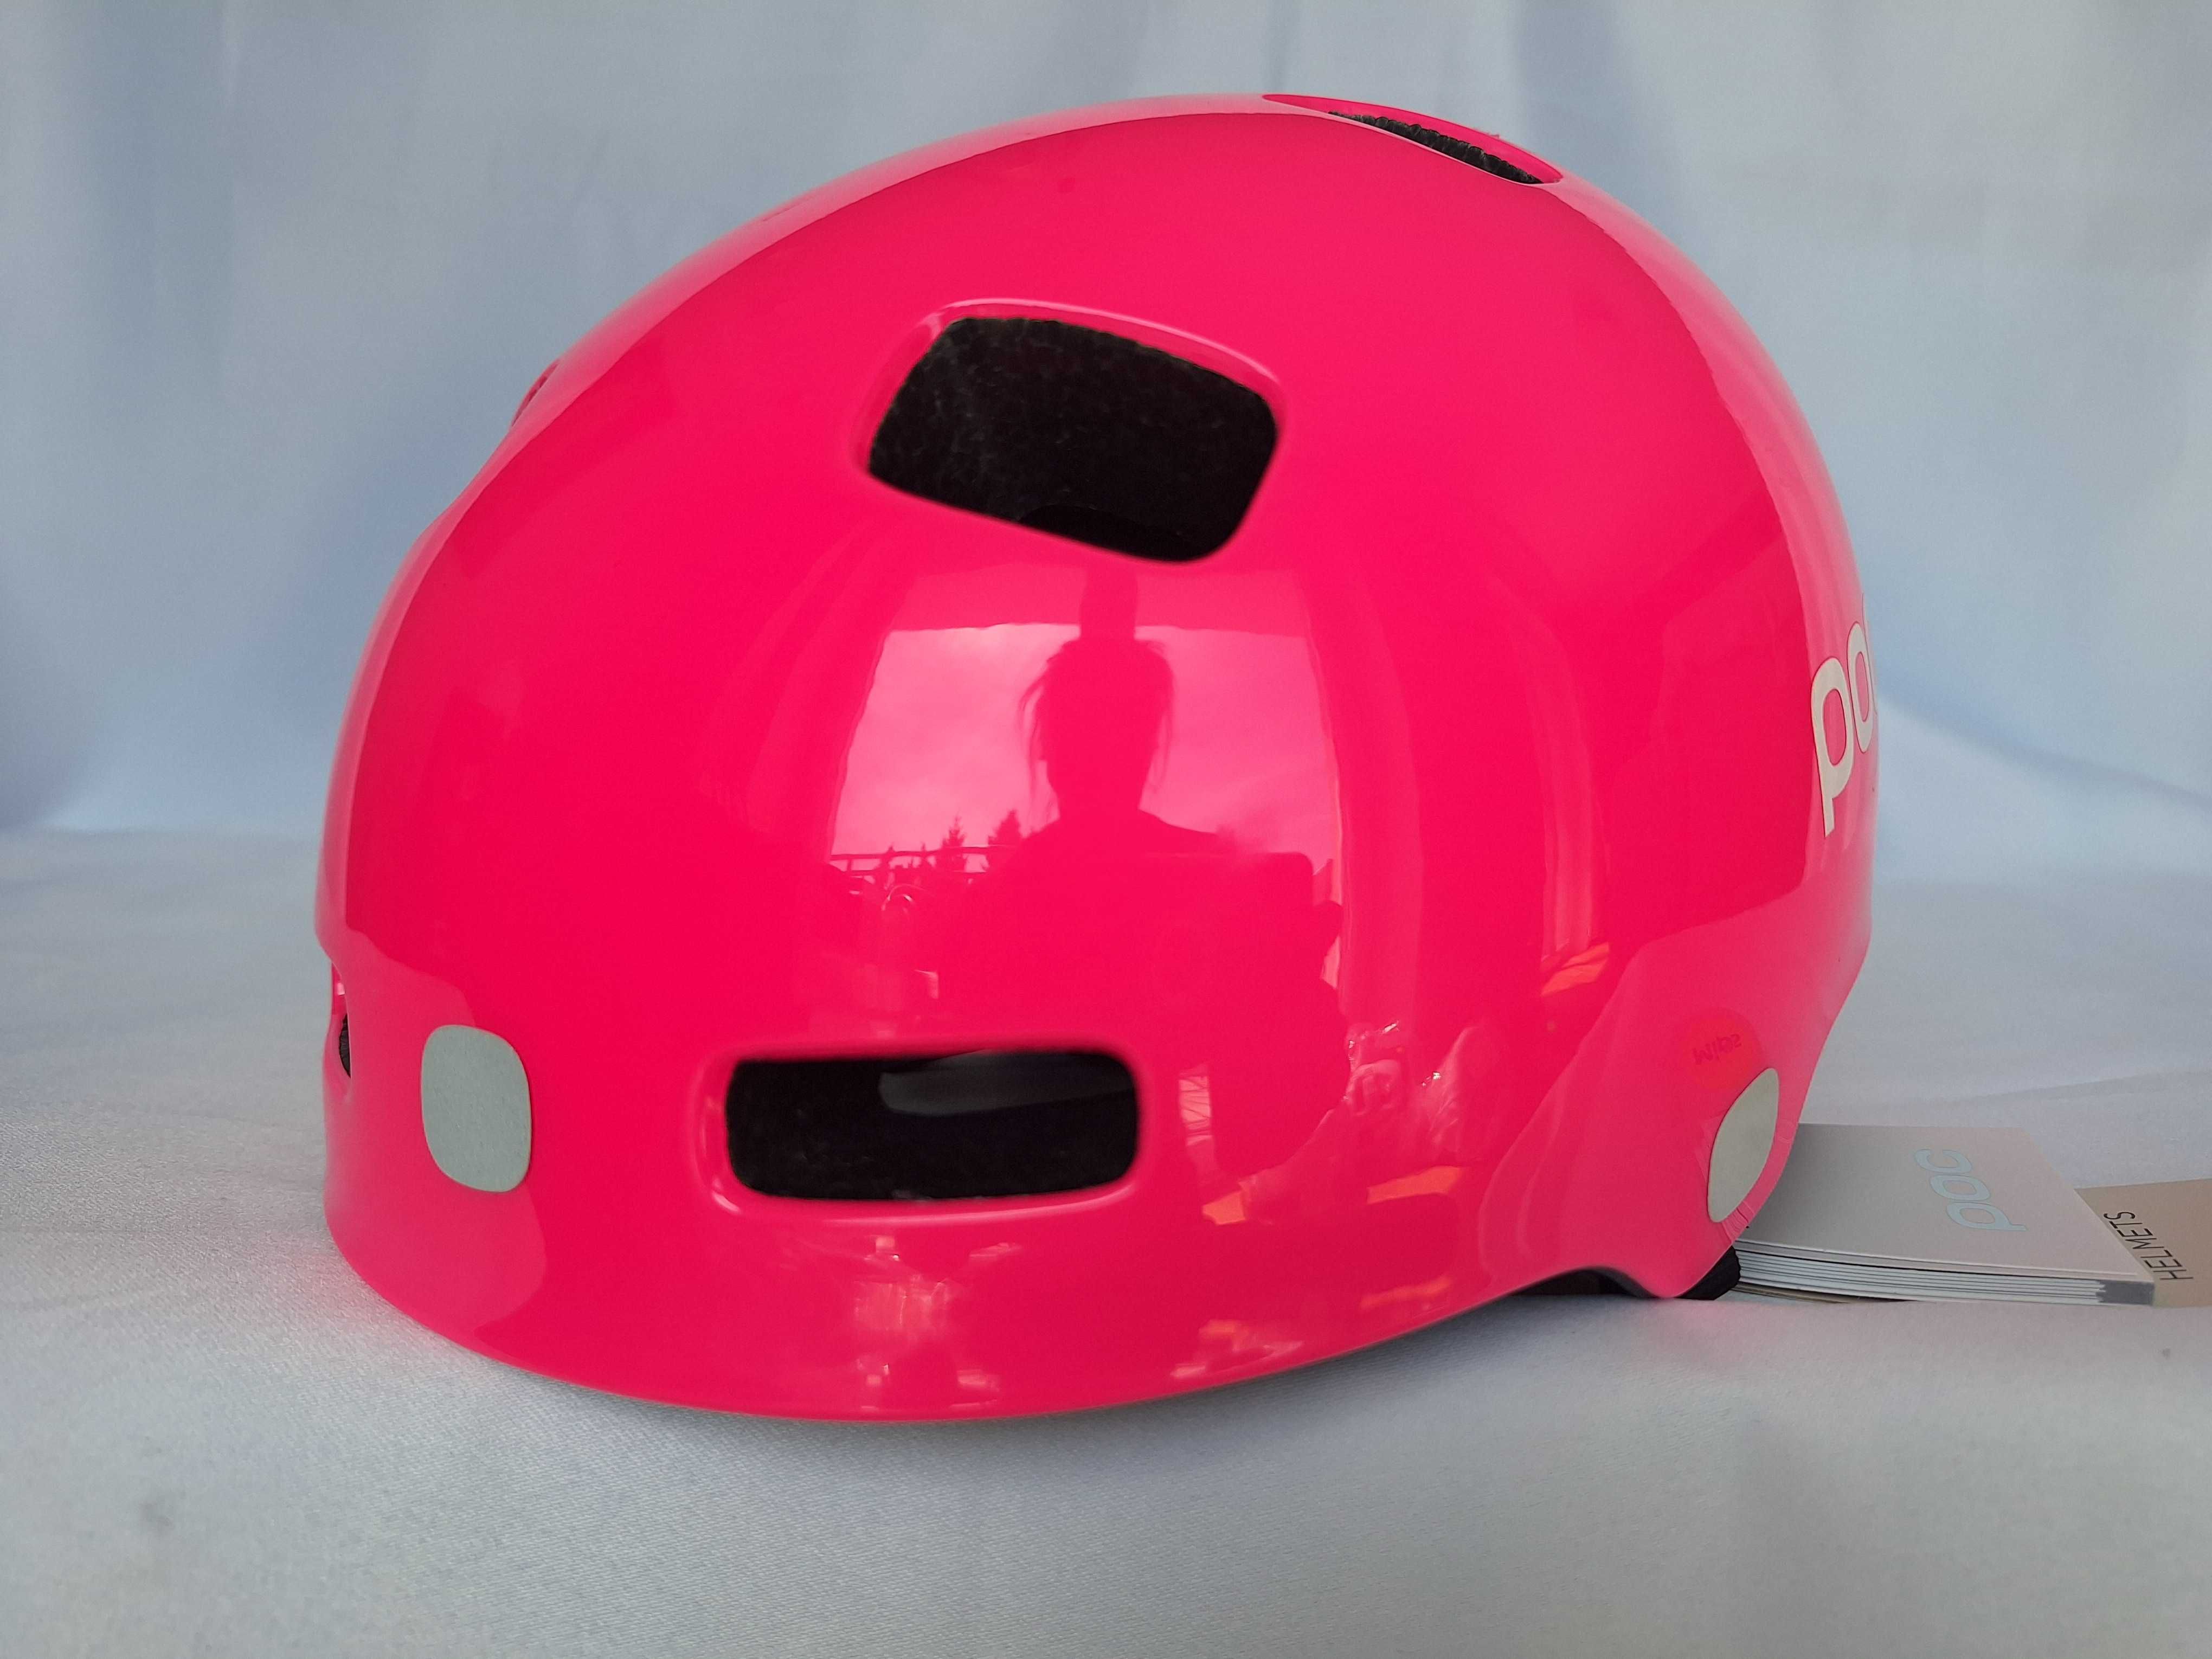 Kask rowerowy dziecięcy Pocito Crane Mips Fluorescent Pink M 55-58cm